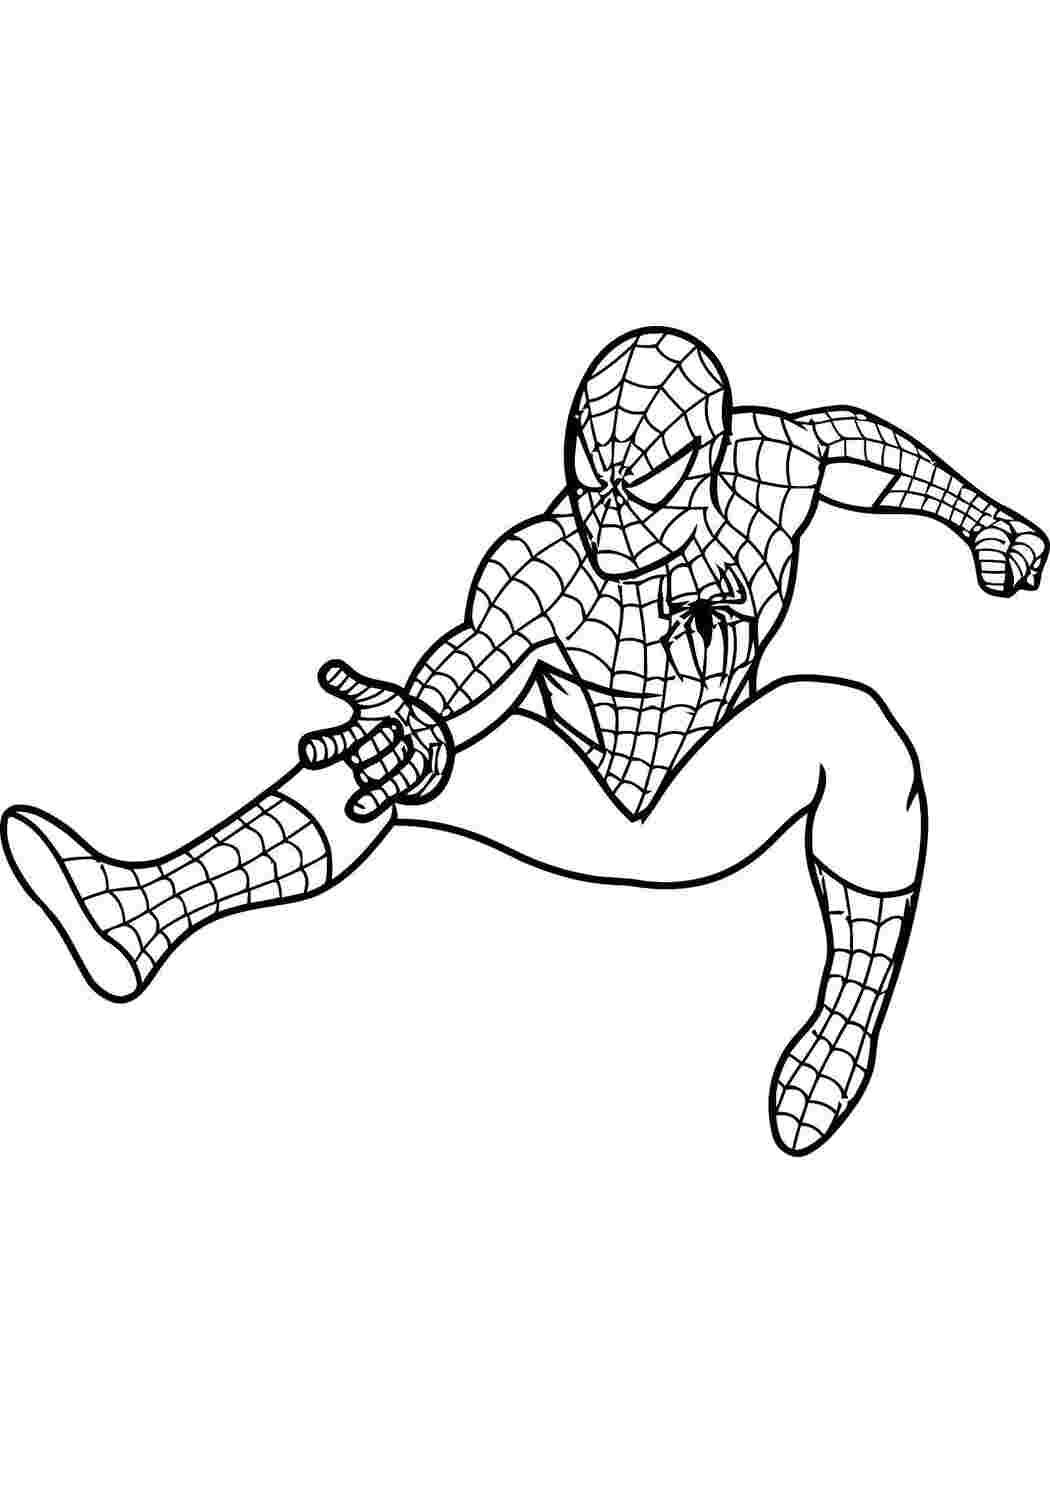 Раскраски Человек паук выпускает паутину. Комиксы Комиксы, Спайдермэн, Человек Паук